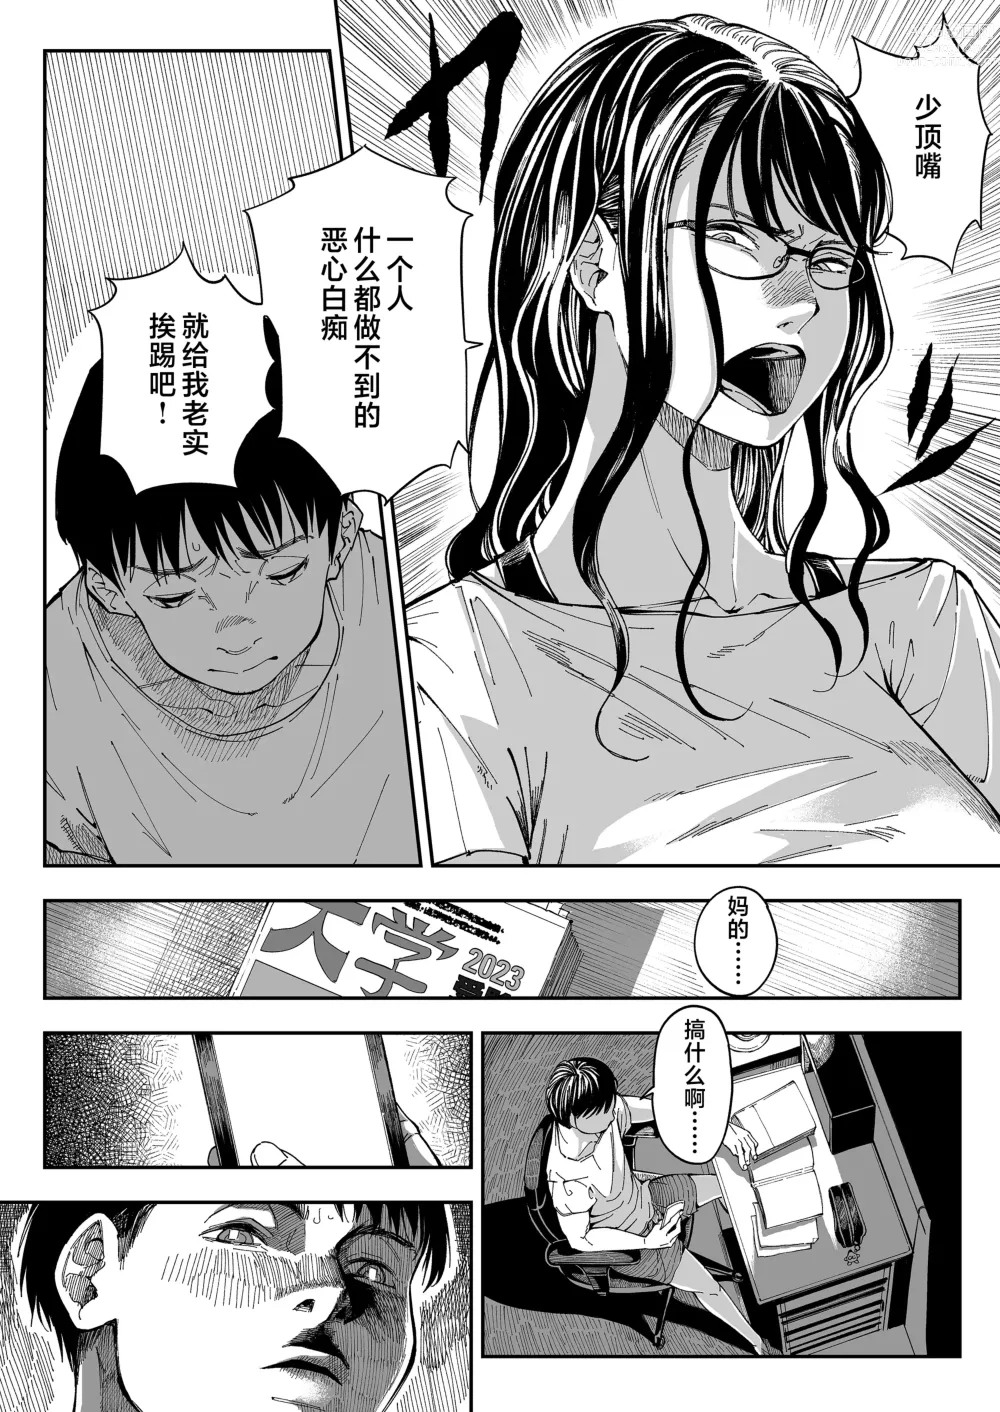 Page 7 of doujinshi 找到了姐姐的福利小号